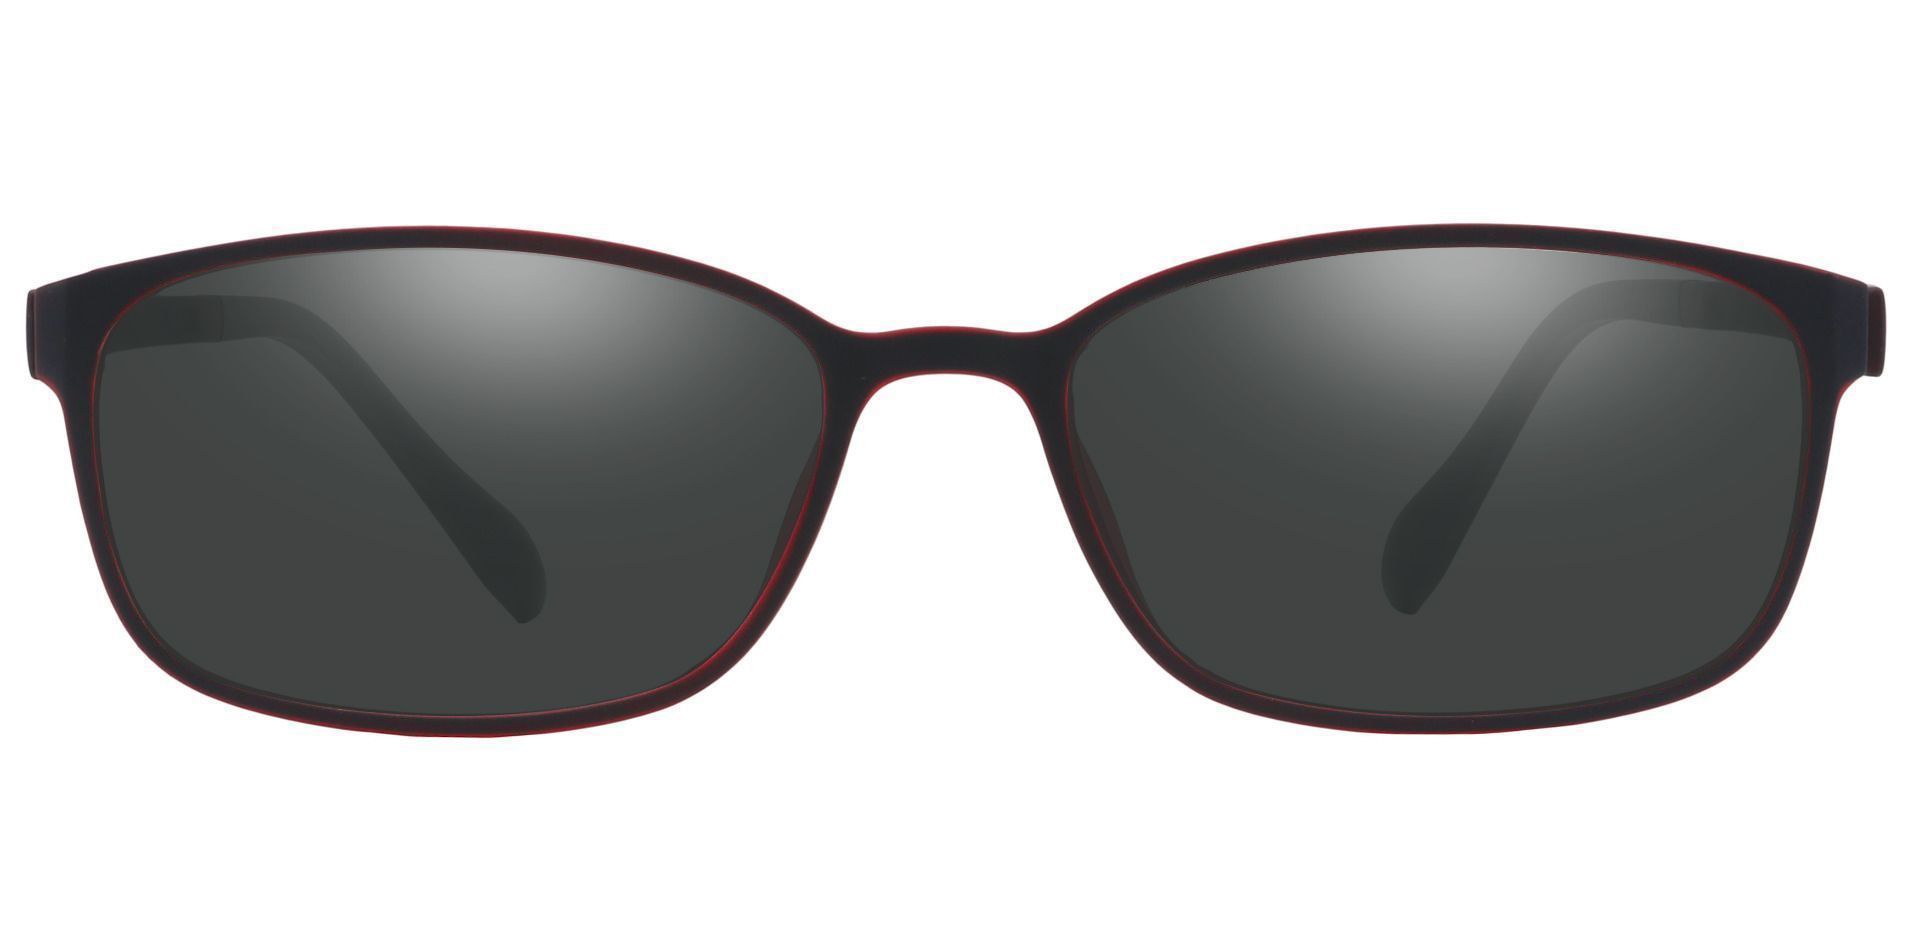 Merlot Rectangle Prescription Sunglasses - Red Frame With Gray Lenses